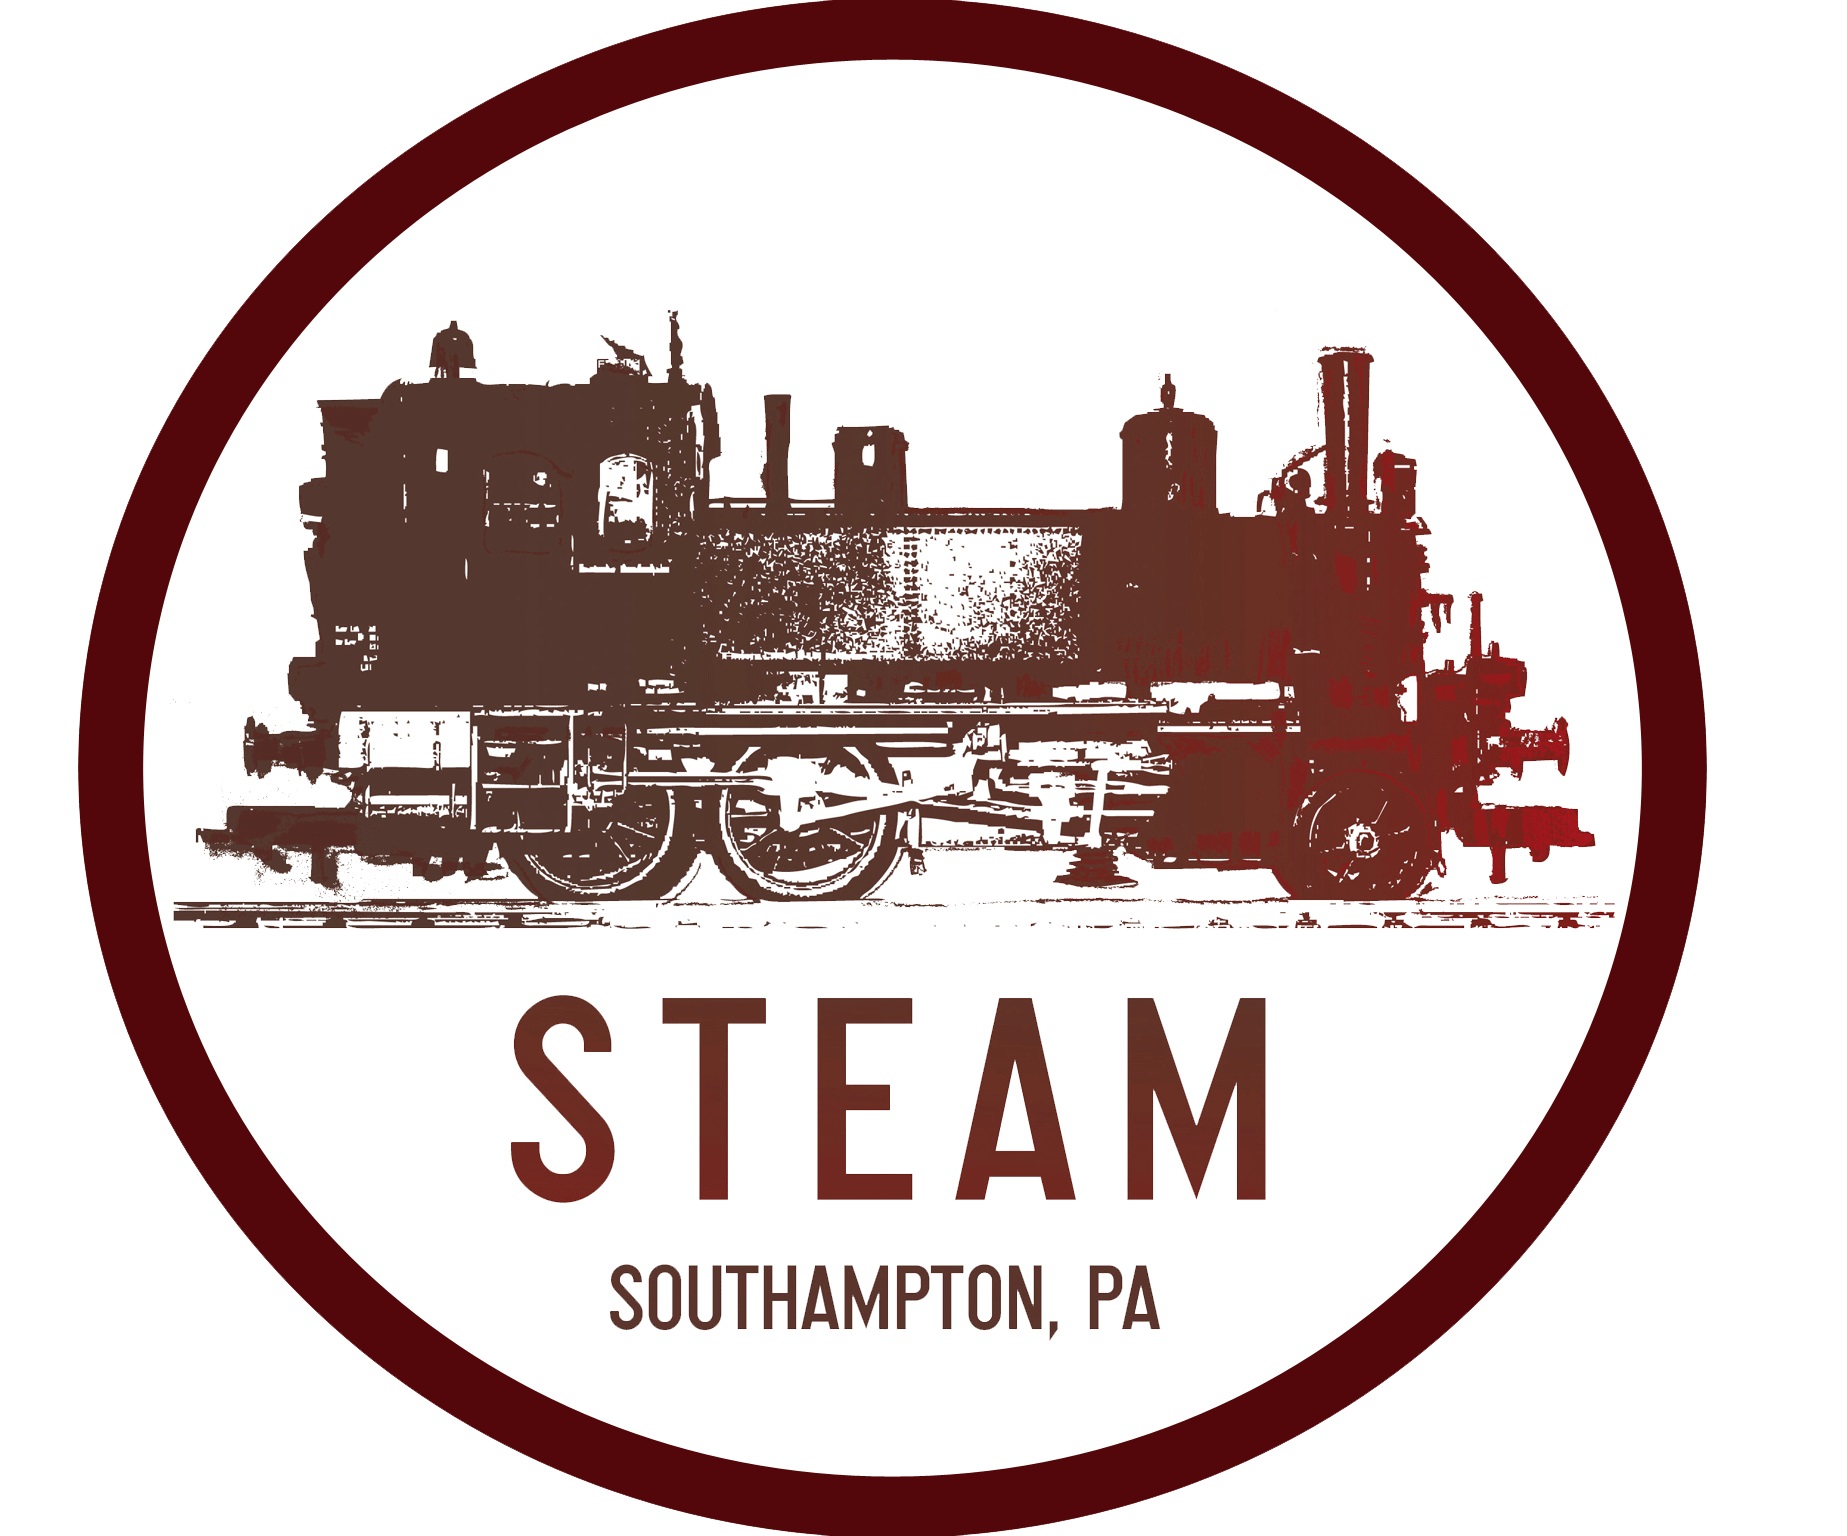 Steam Pub